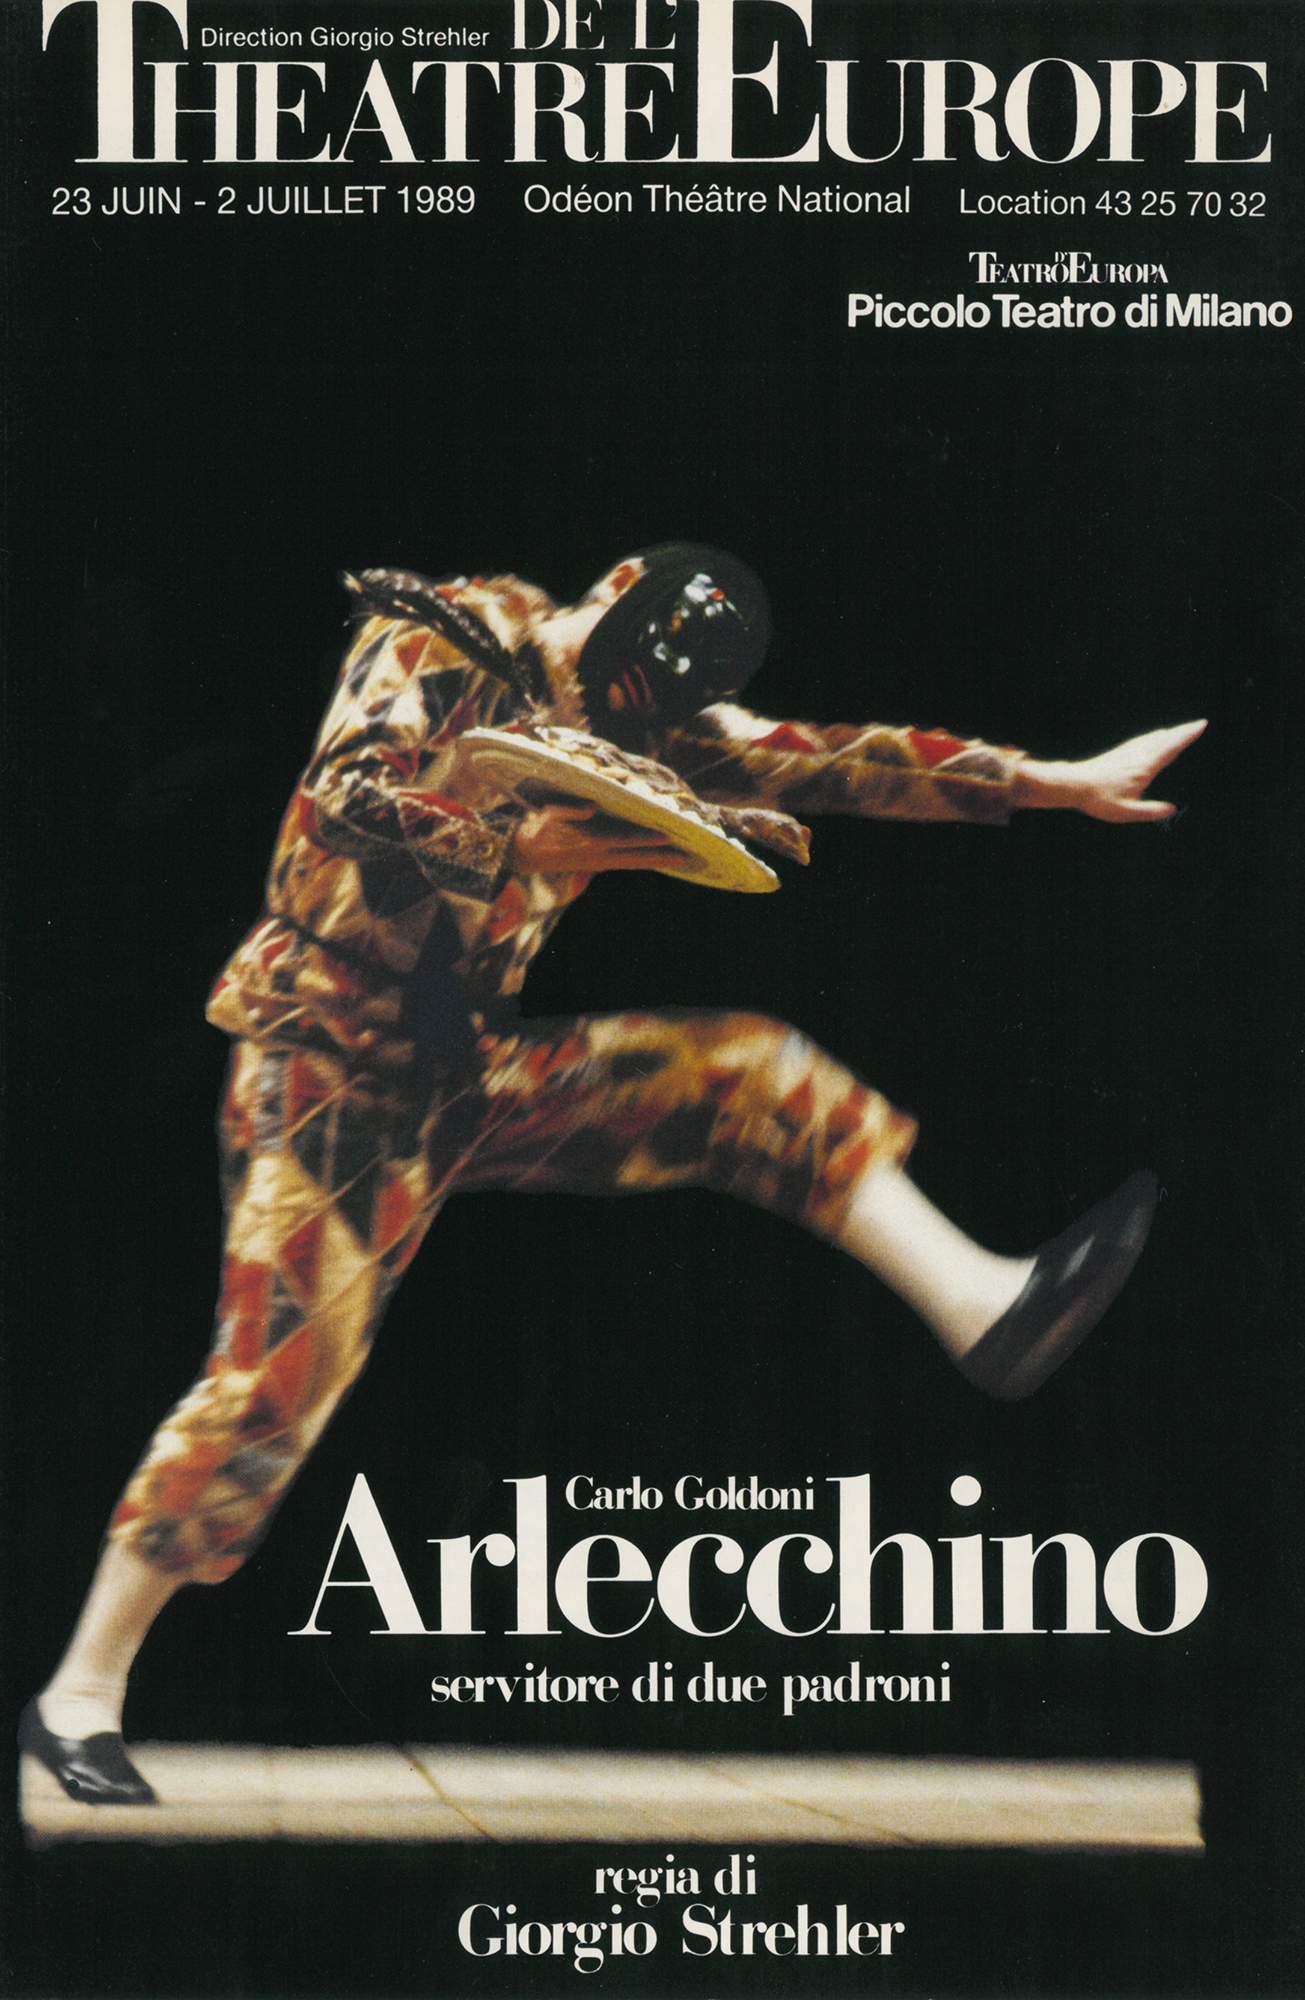 Parigi, 23 giugno 1989 - Archivio Piccolo Teatro di Milano